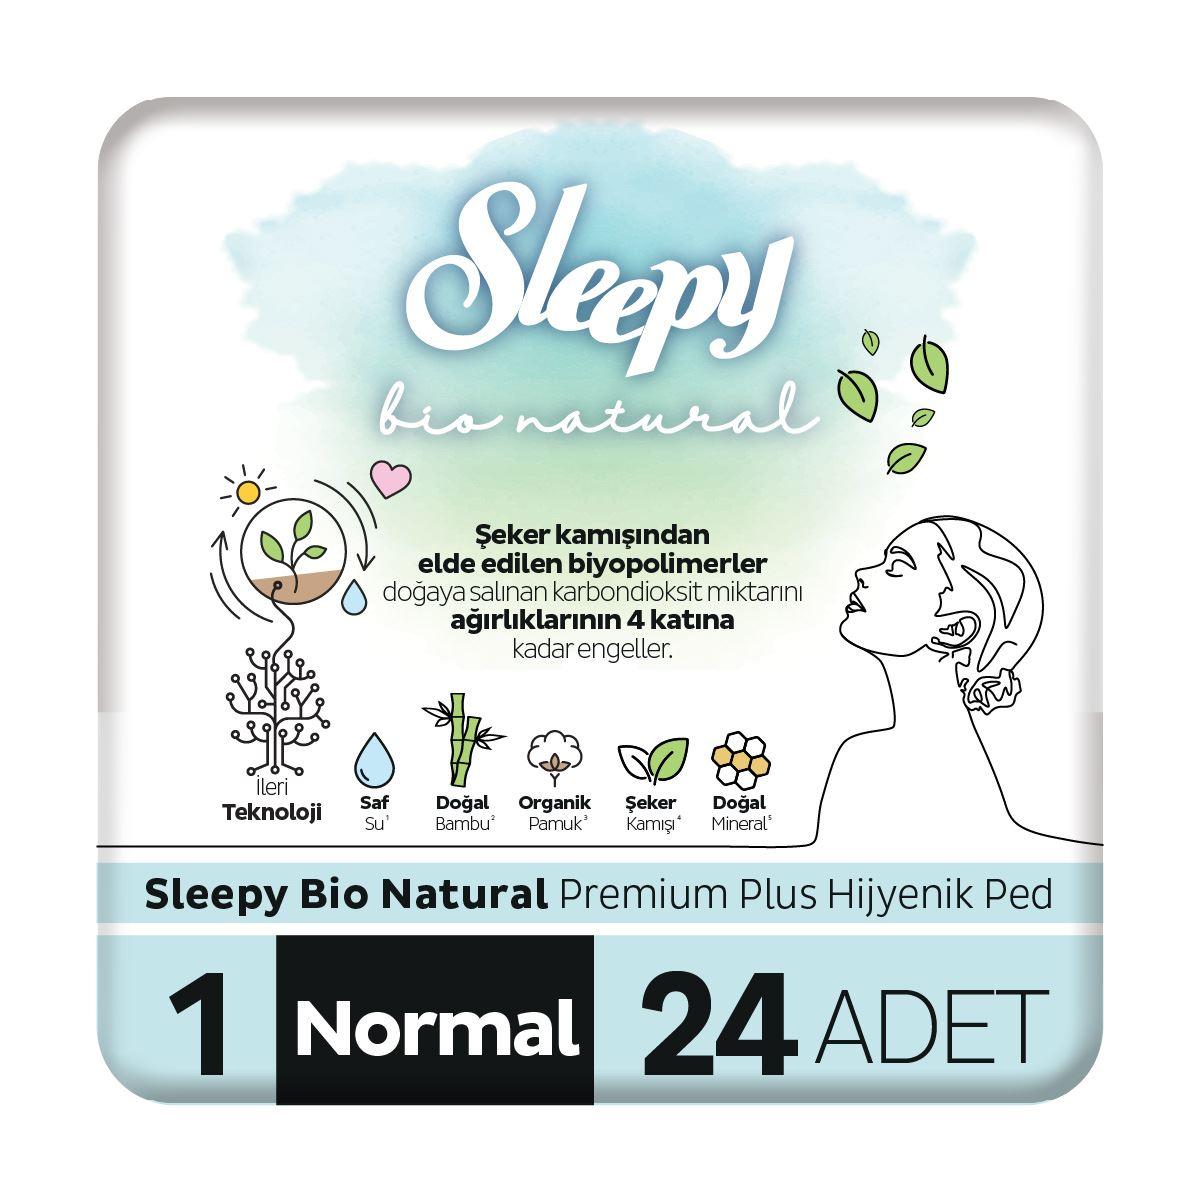 Sleepy Bio Natural Premium Plus Hijyenik Ped Normal 24x5 120 Adet Ped